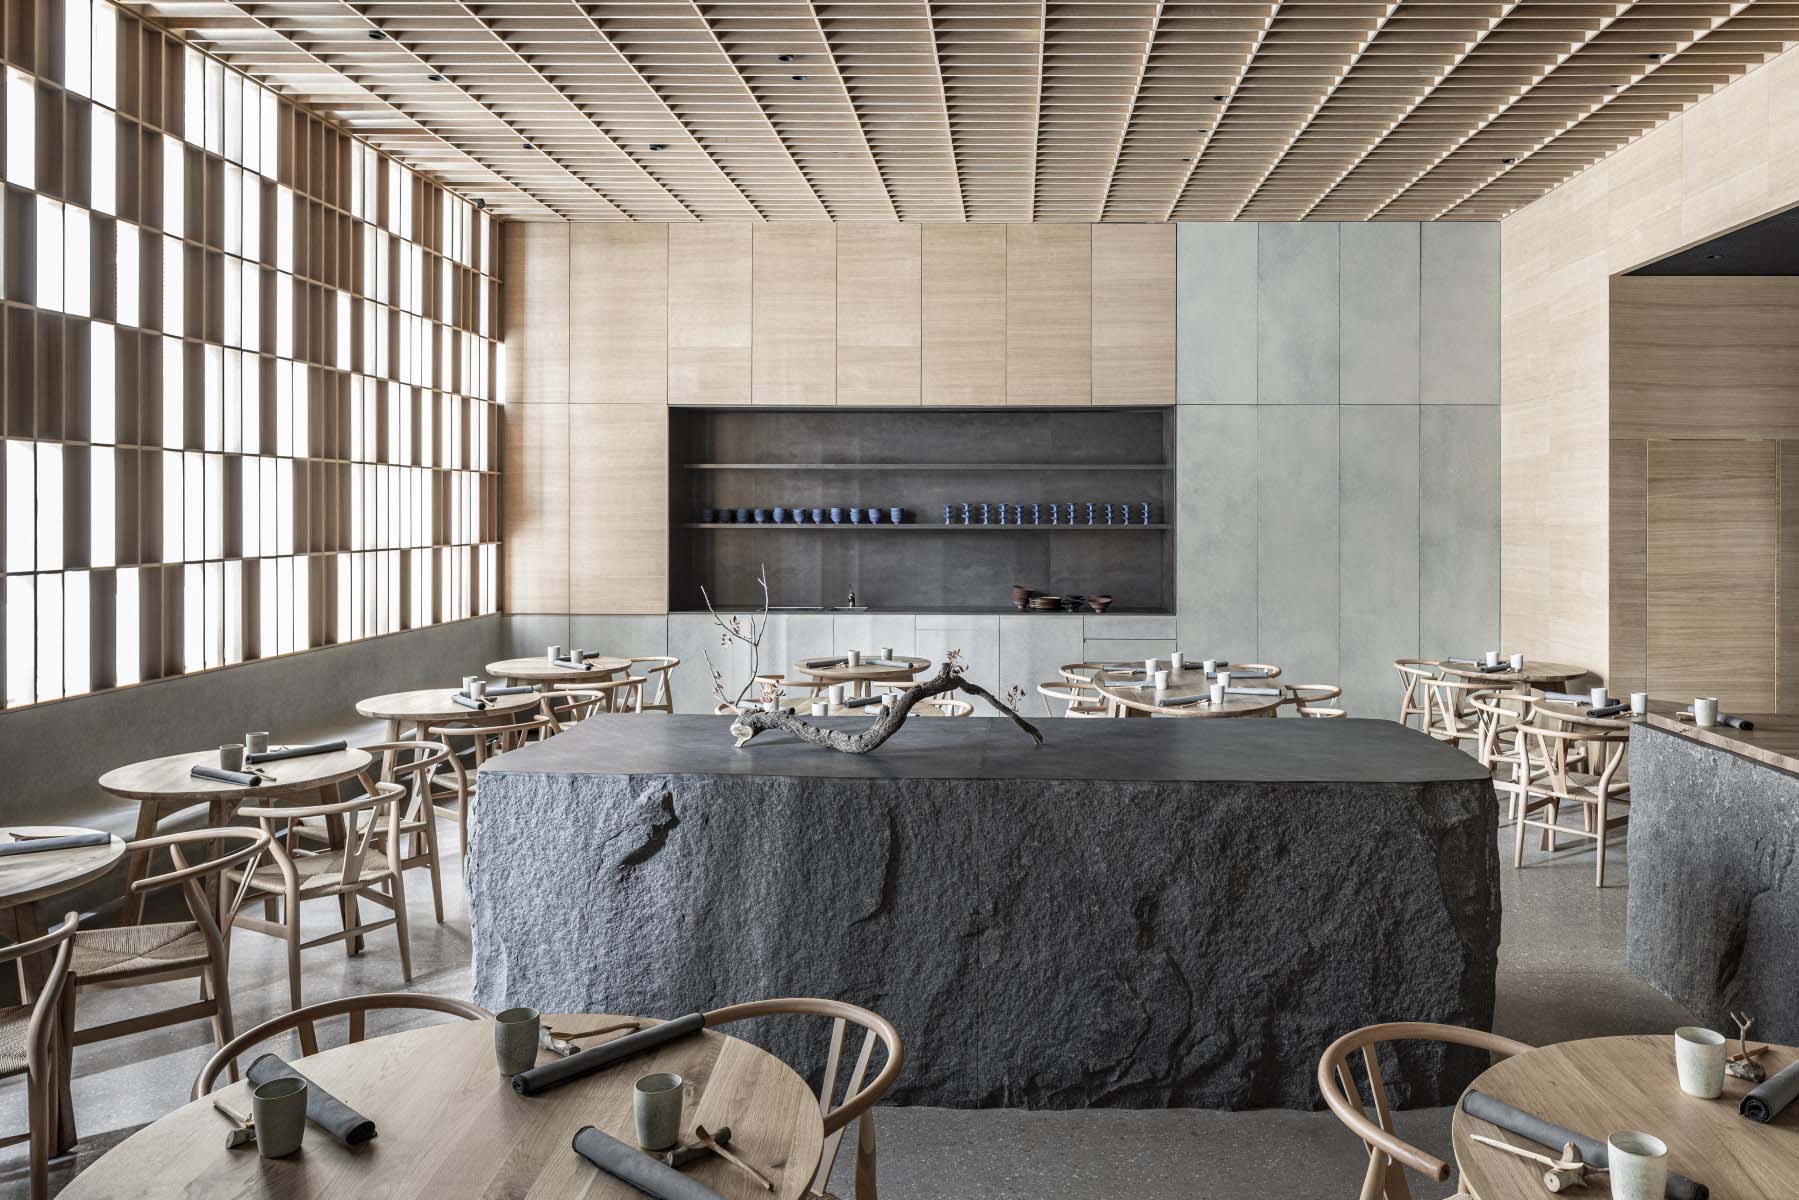 餐廳設計,國外餐廳設計,餐廳設計案例,Pitsou Kedem Architects,以色列,HIBA私享餐廳,HIBA Restaurant,Avital Shenhav-Shani